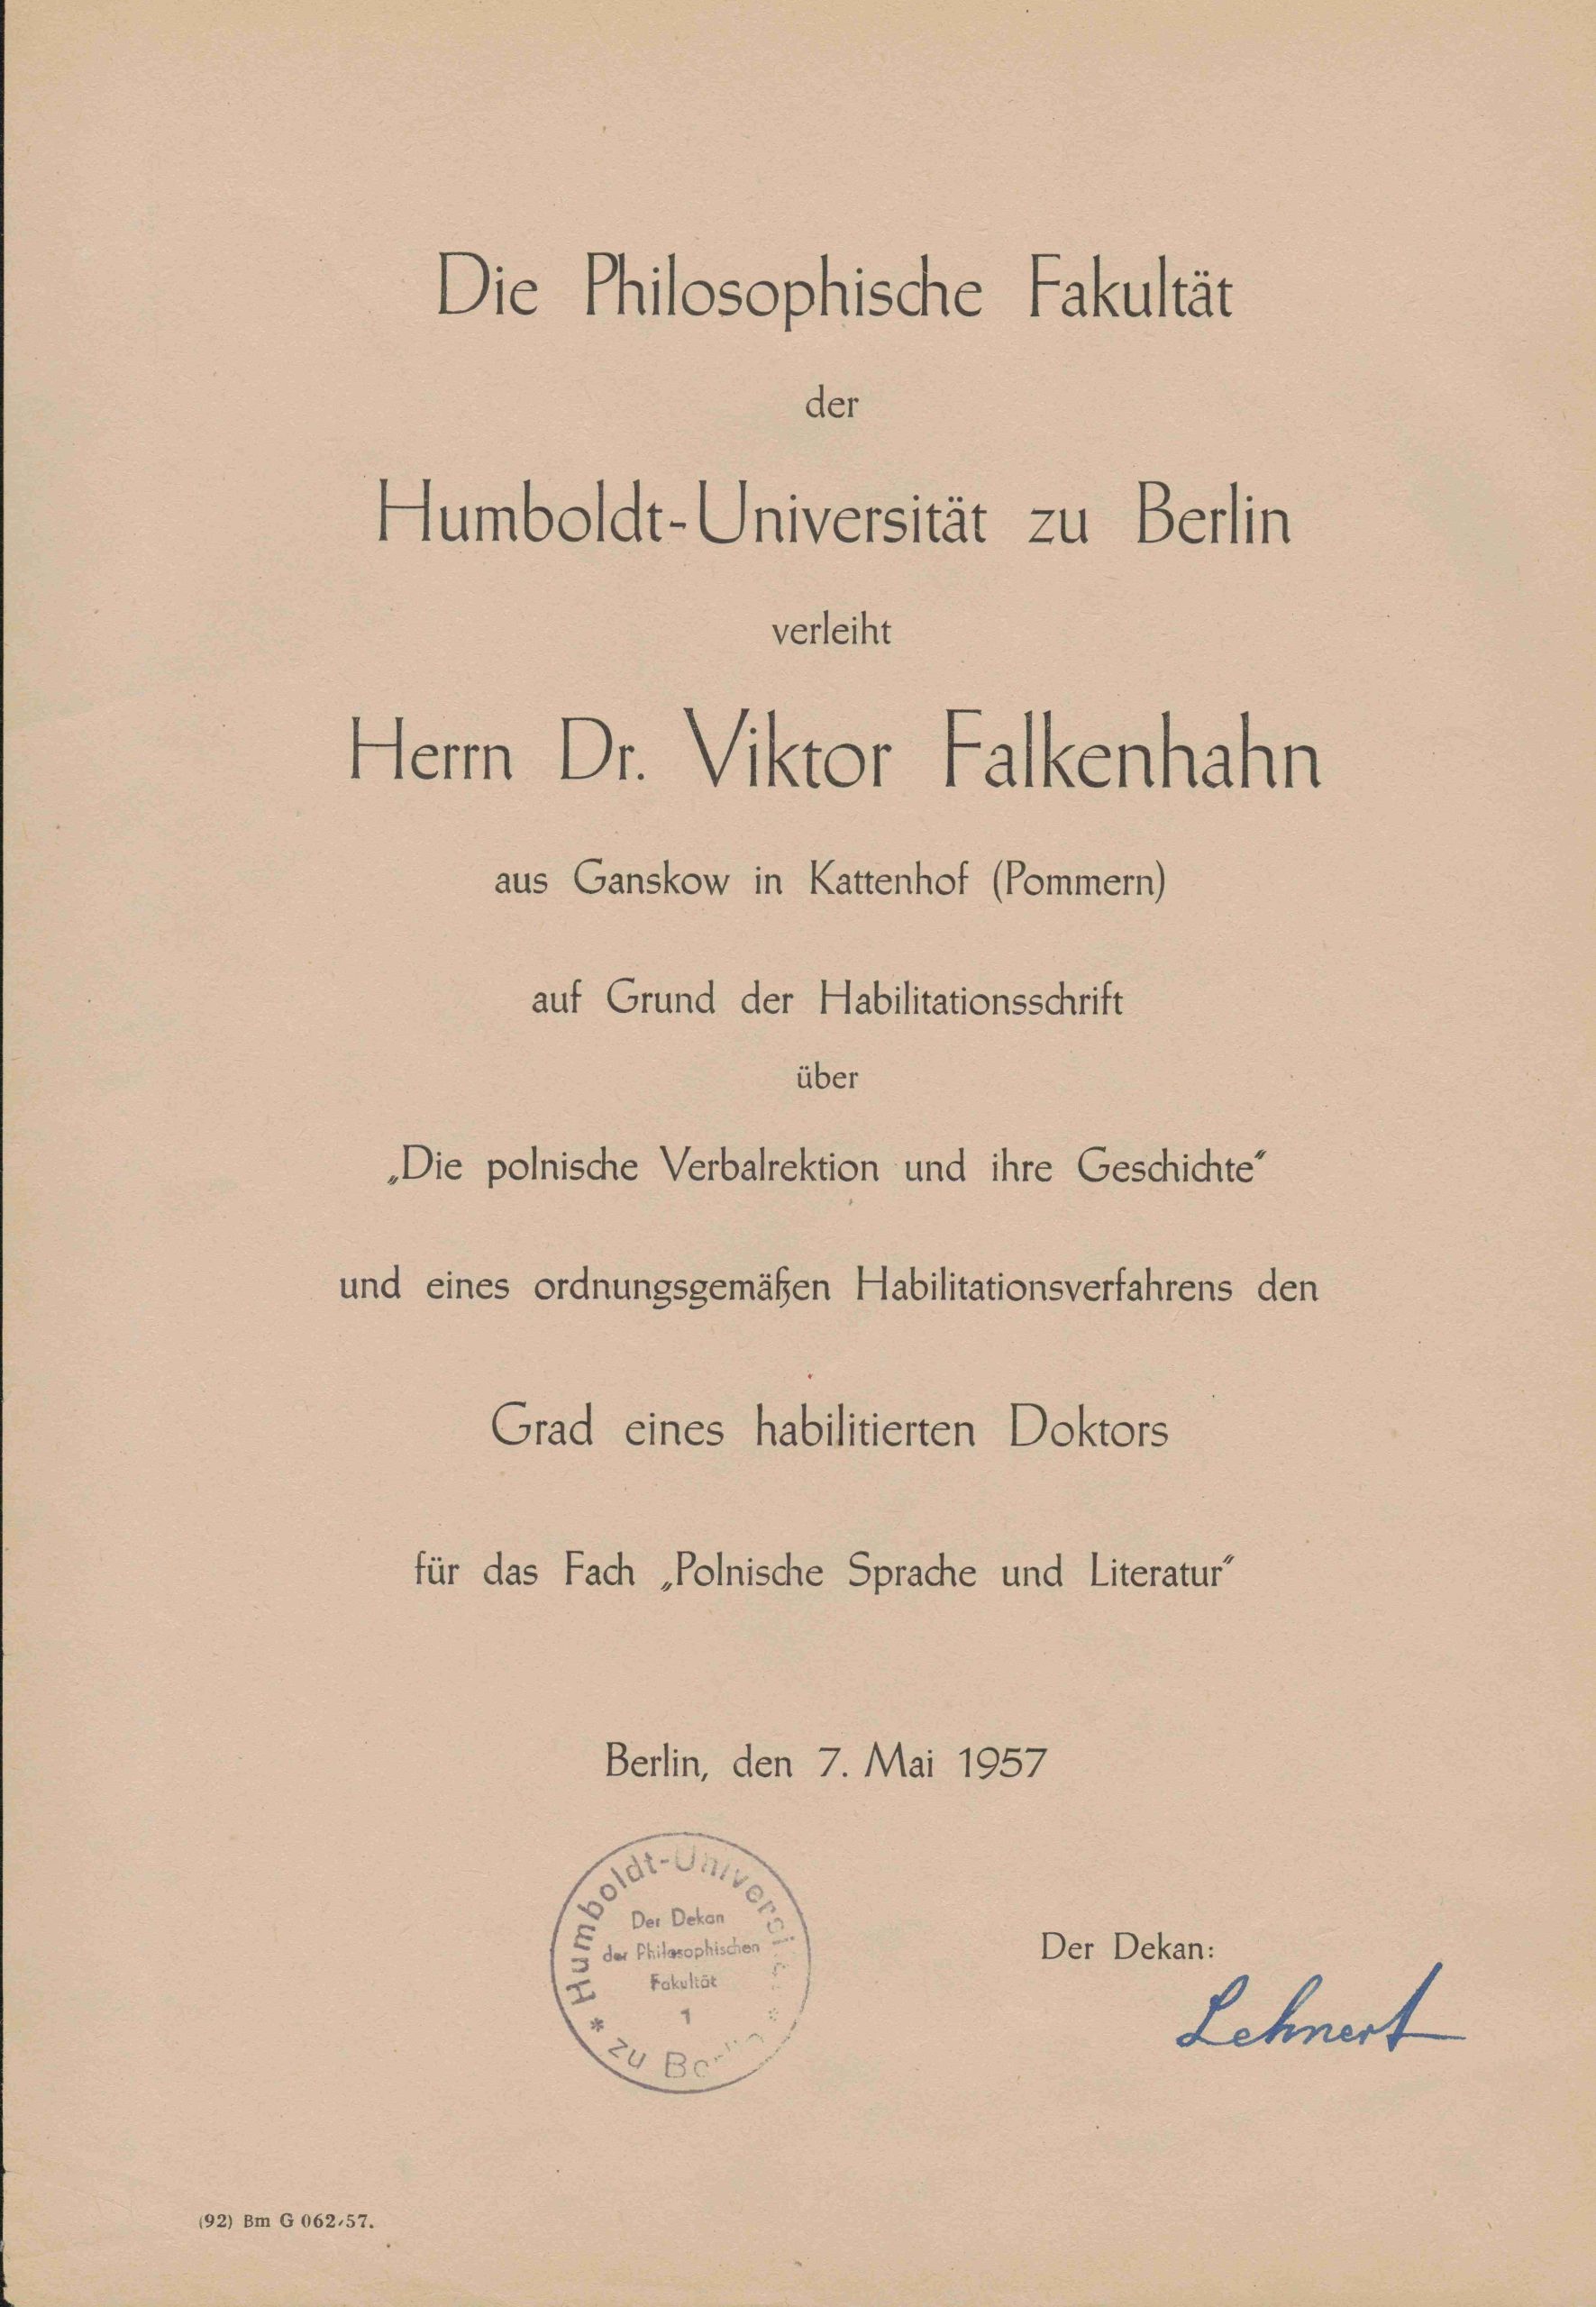 Humboldtų universiteto Filosofijos fakulteto dokumentas dėl habilituoto daktaro laipsnio suteikimo V. Falkenhanui už lenkų kalbos veiksmažodžio tyrinėjimą. Berlynas, 1957 m. gegužės 7 d. MLLM P26428